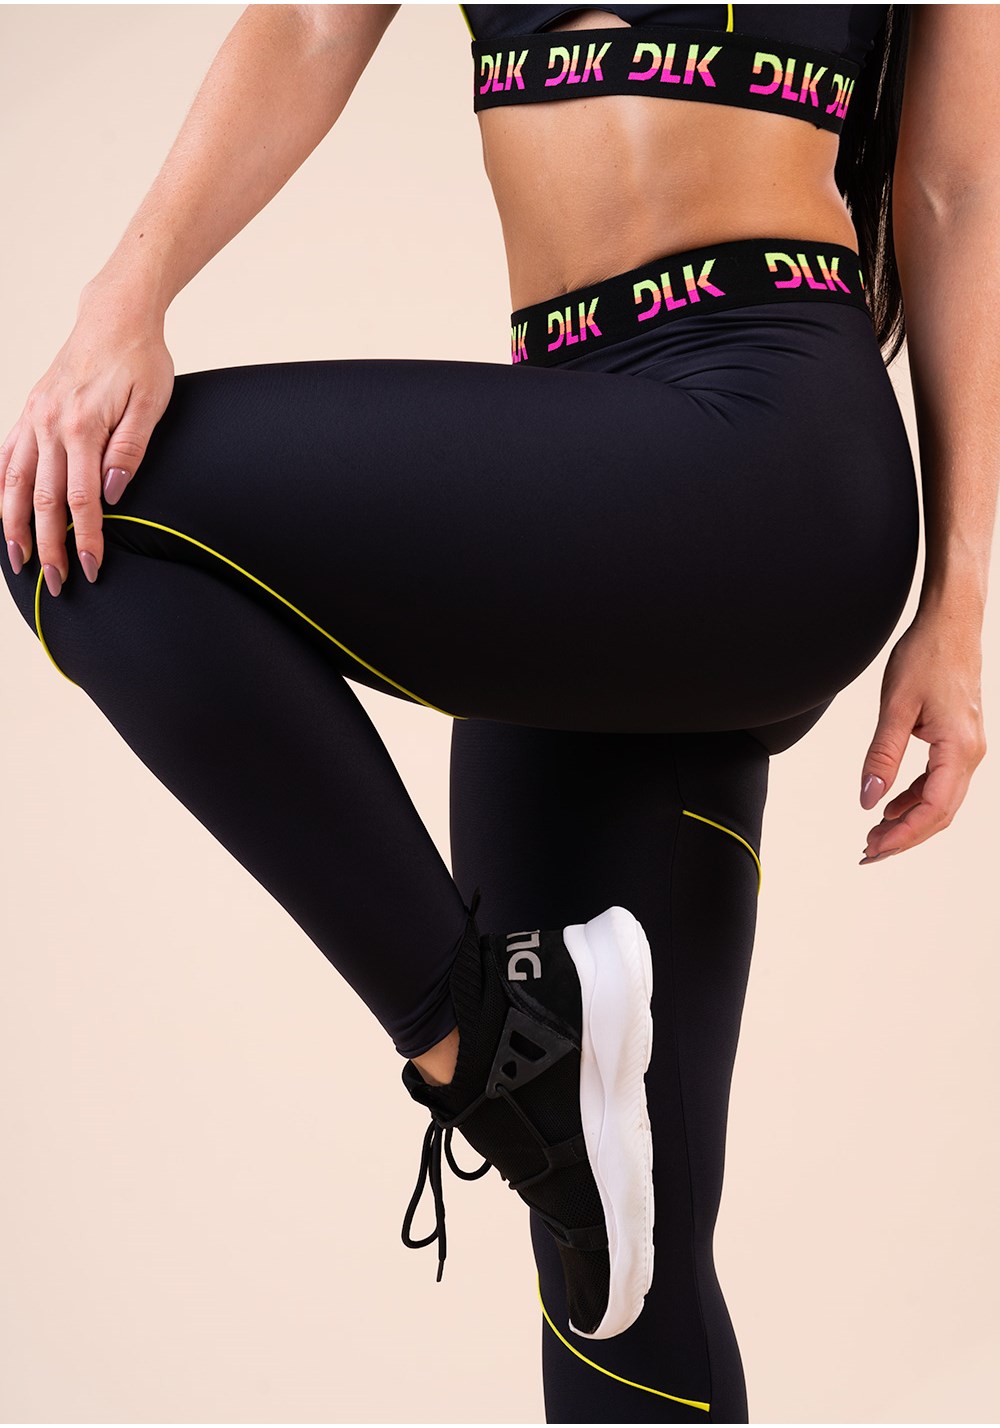 Legging fitness feminina preta elástico colorido na cintura action